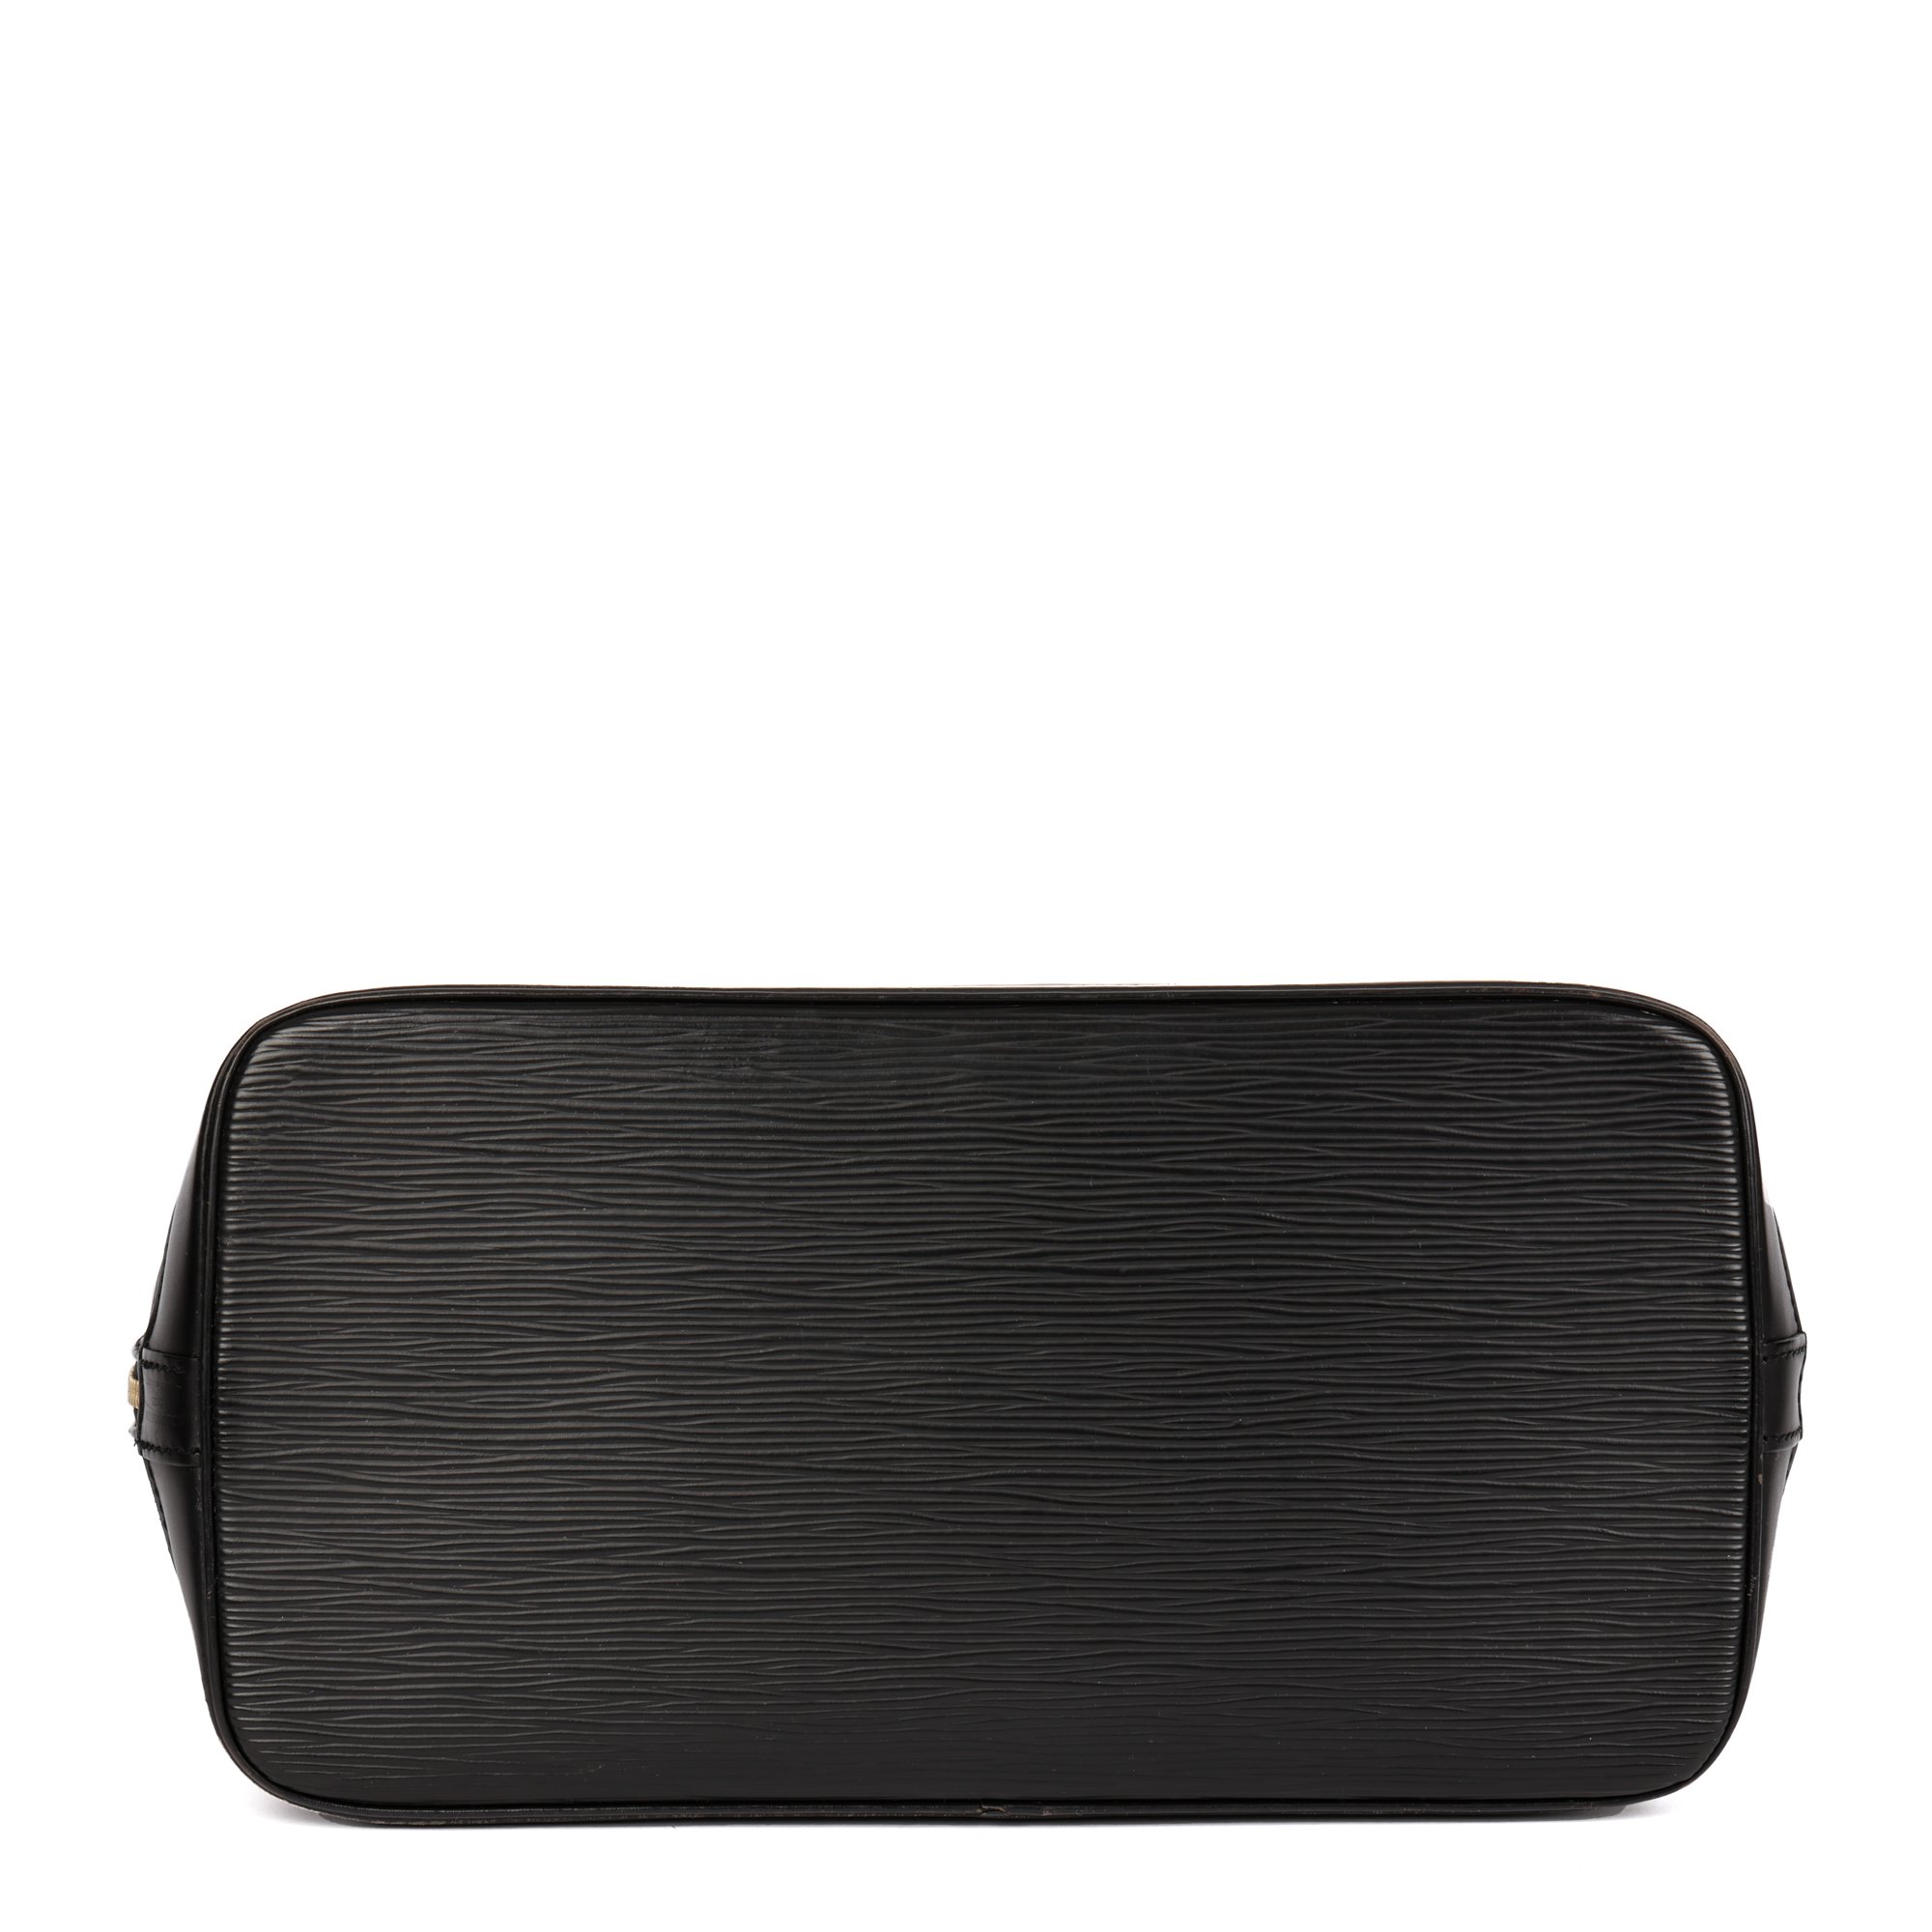 Louis Vuitton Black Epi Leather Alma PM